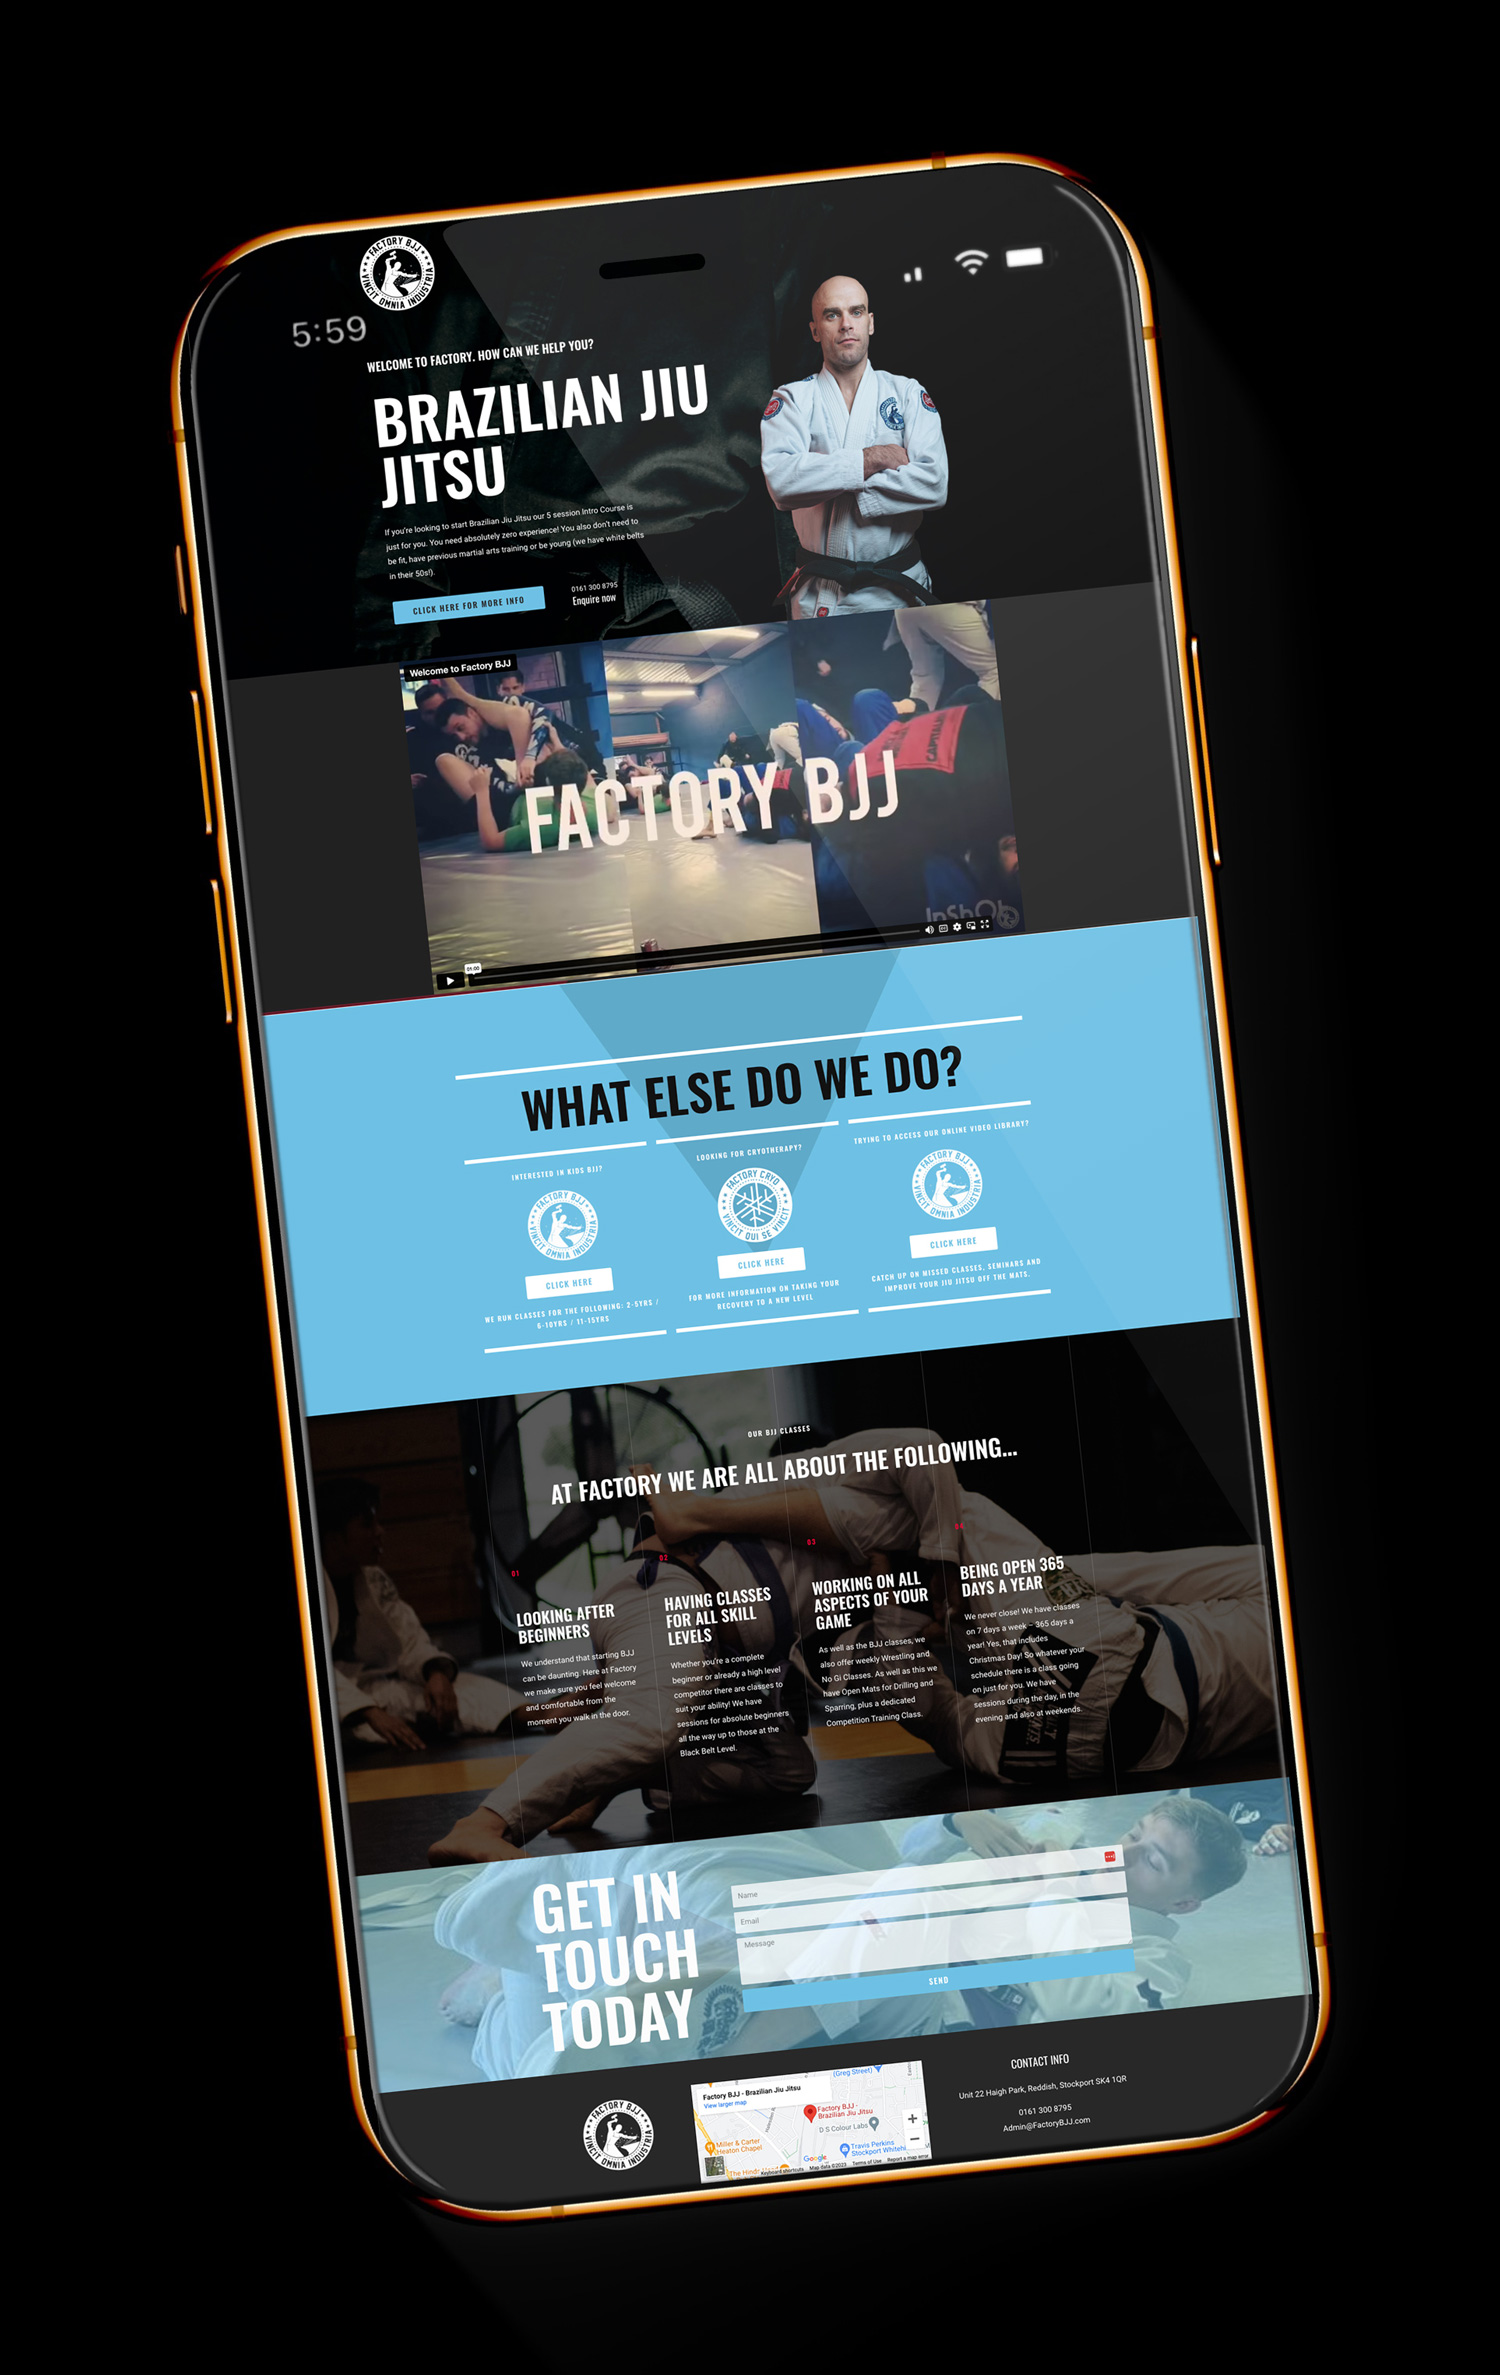 Mobile First Website Design